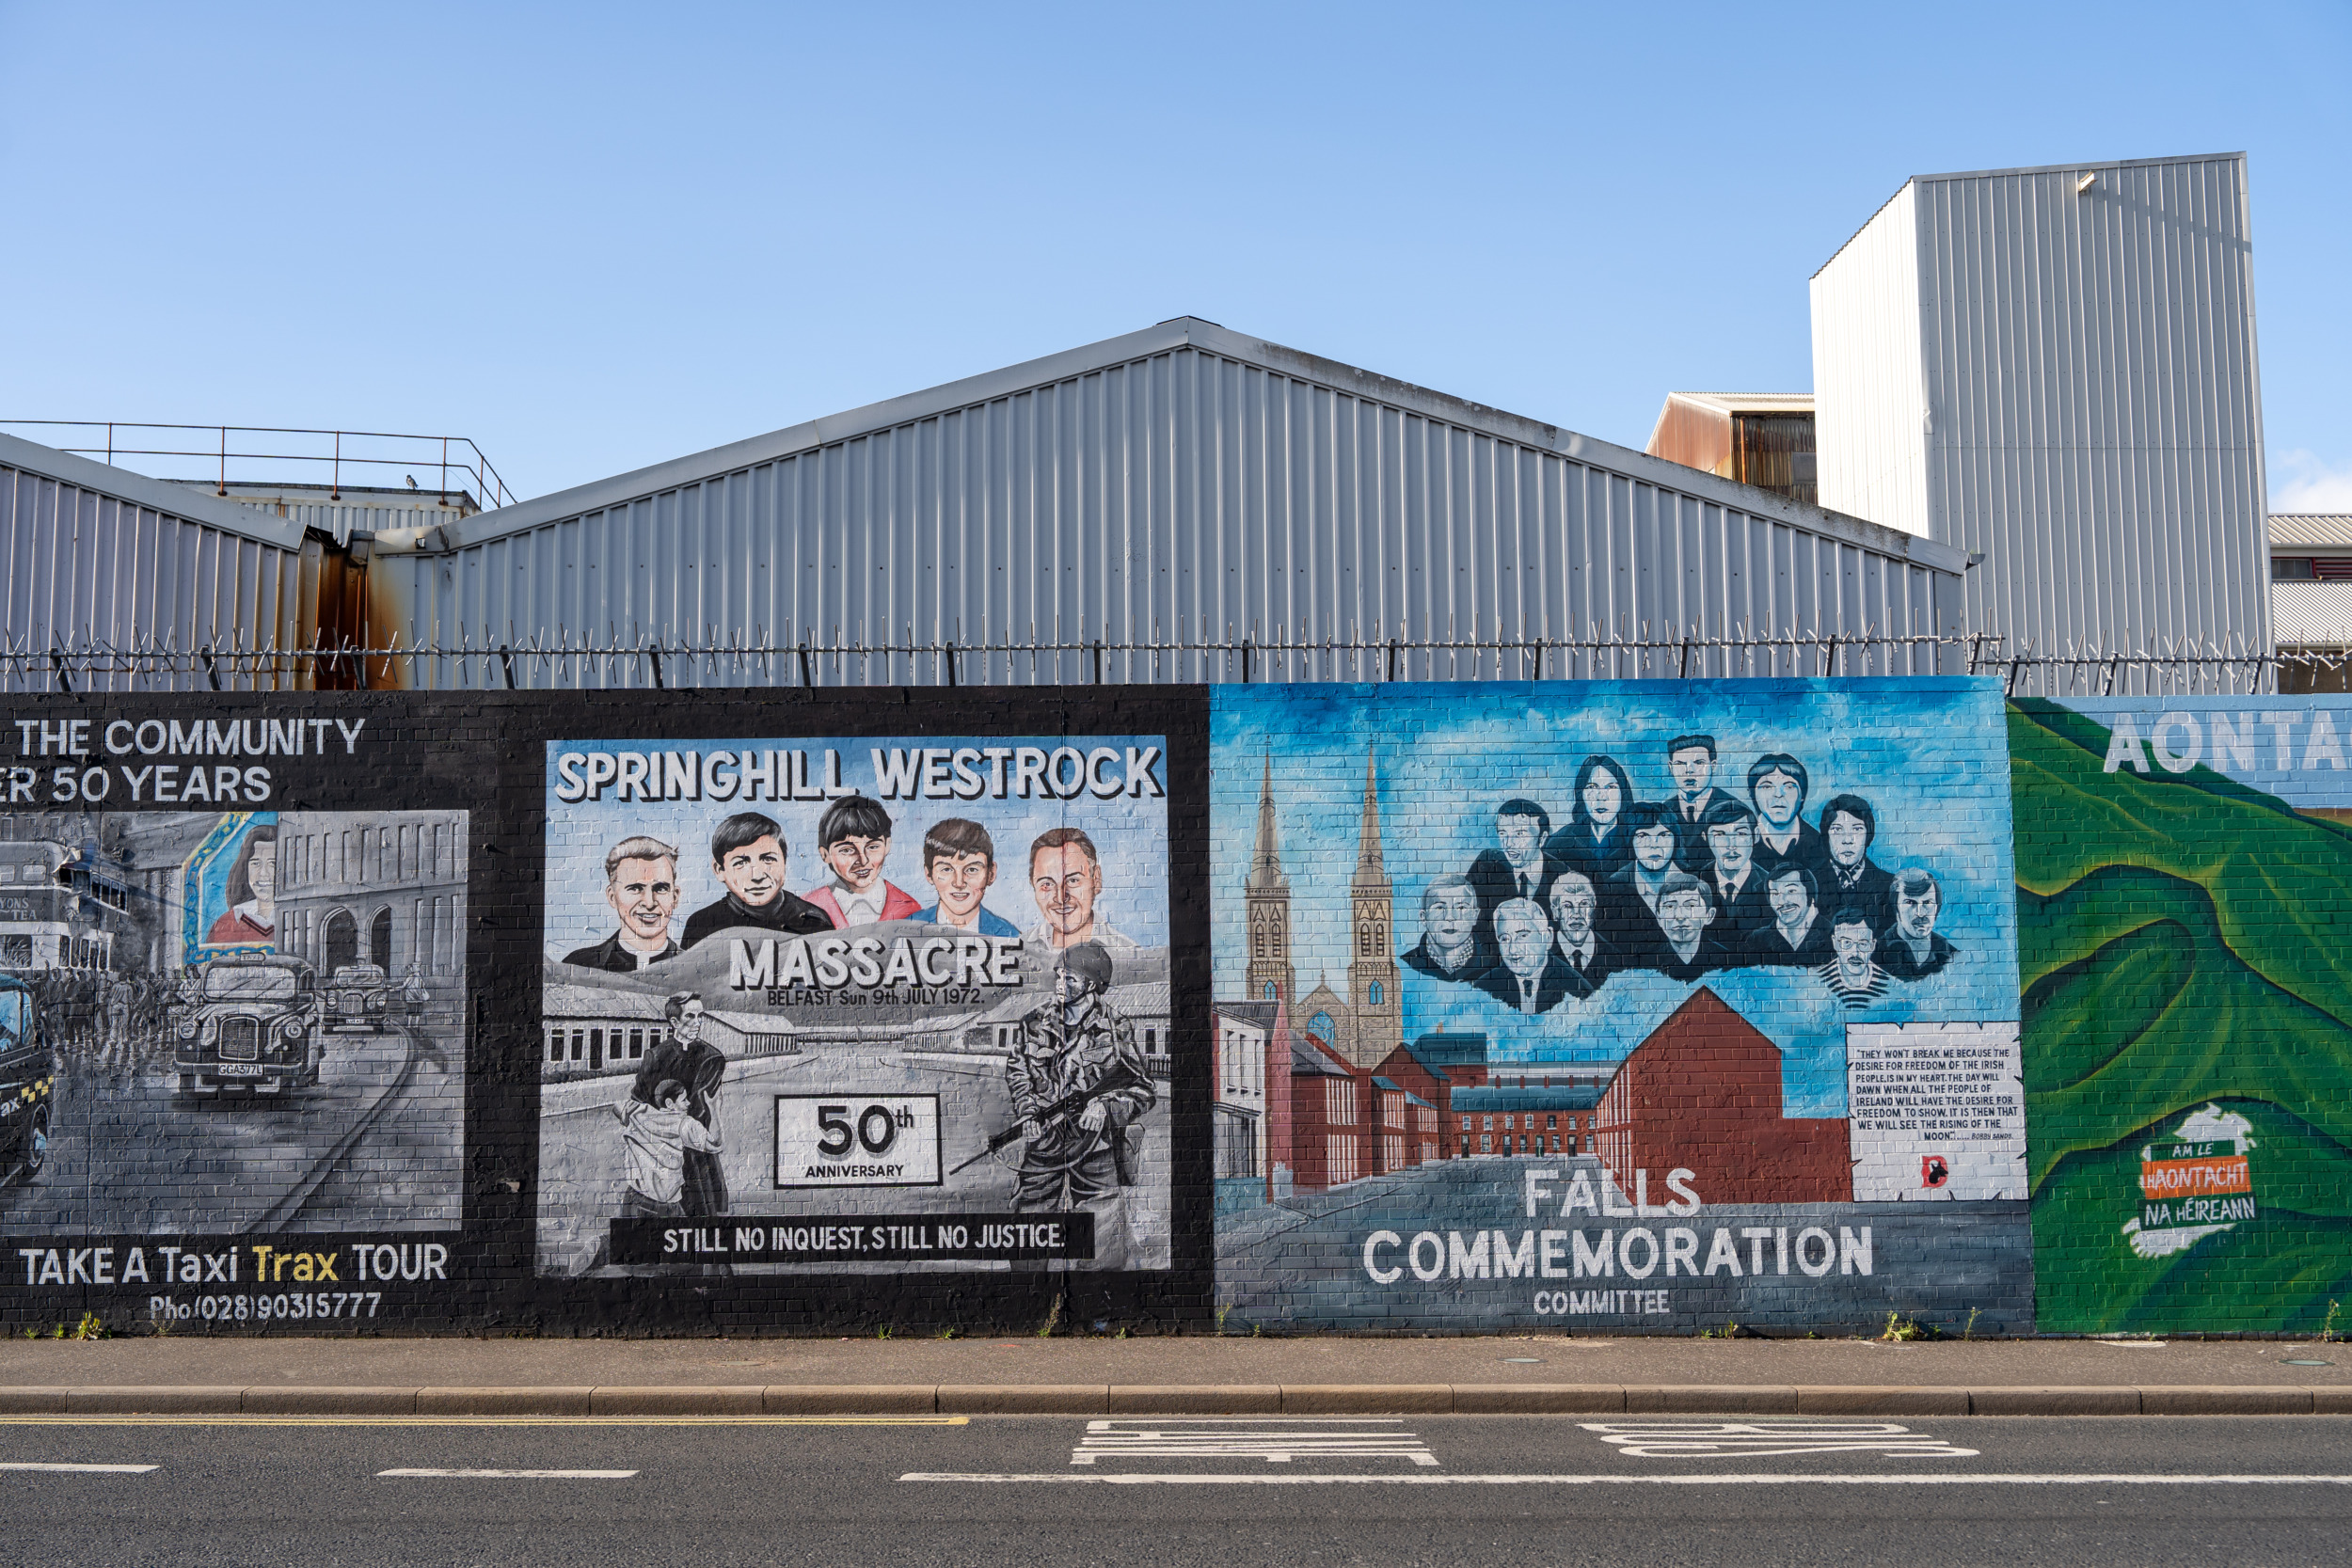 Die wohl bekannteste Sehenswürdigkeit in Belfast ist die Peace Wall